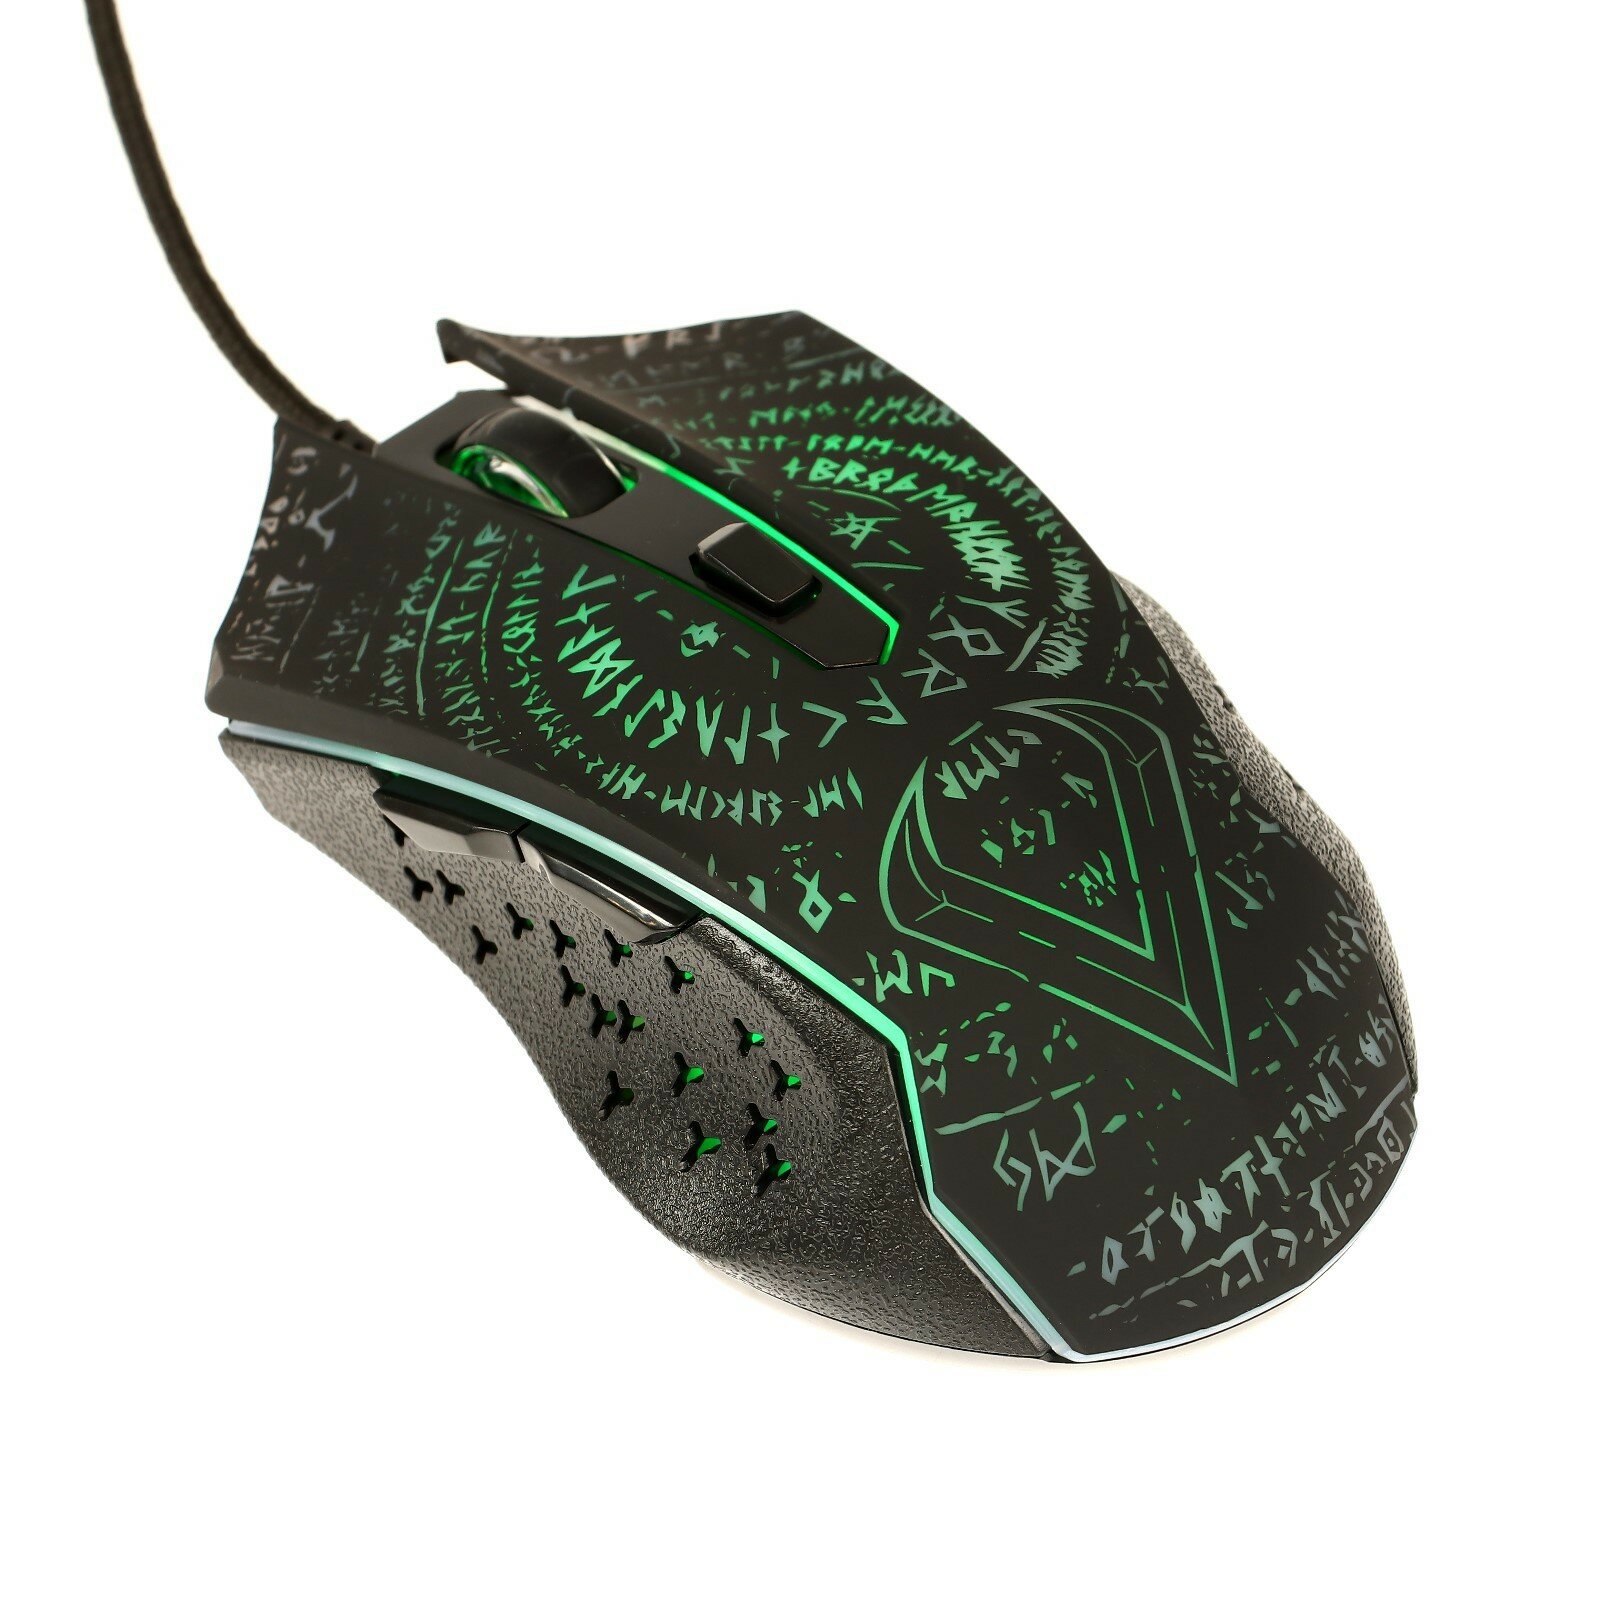 Мышь Valhalla M35, игровая, проводная, 6 кнопок, подсветка, 3200 dpi, USB, чёрная